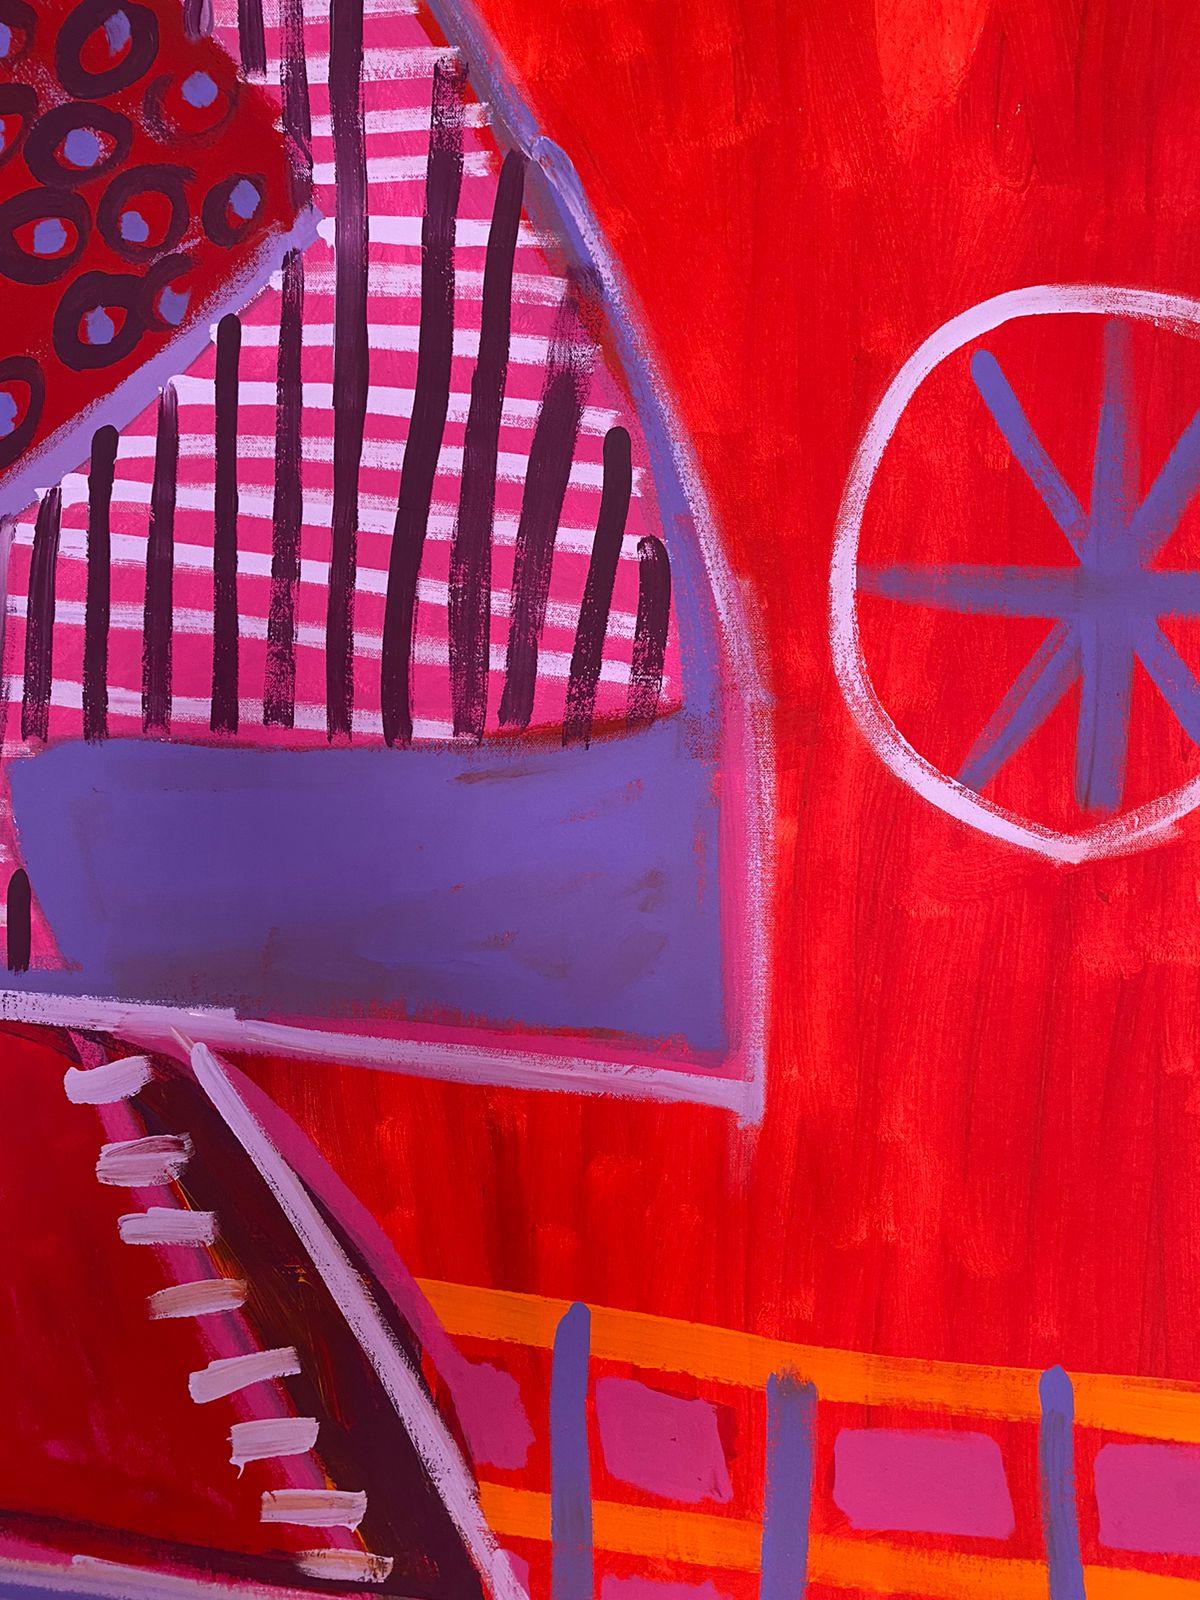 Art contemporain, peinture abstraite
Acrylique sur toile
215x220cm
Signé 
LIVRAISON GRATUITE ROLLE




A propos de l'artiste
Enrique Pichardo (Mexico, 1973) est diplômé de l'Escuela Nacional de Pintura, Escultura y Grabado (ENPEG) 